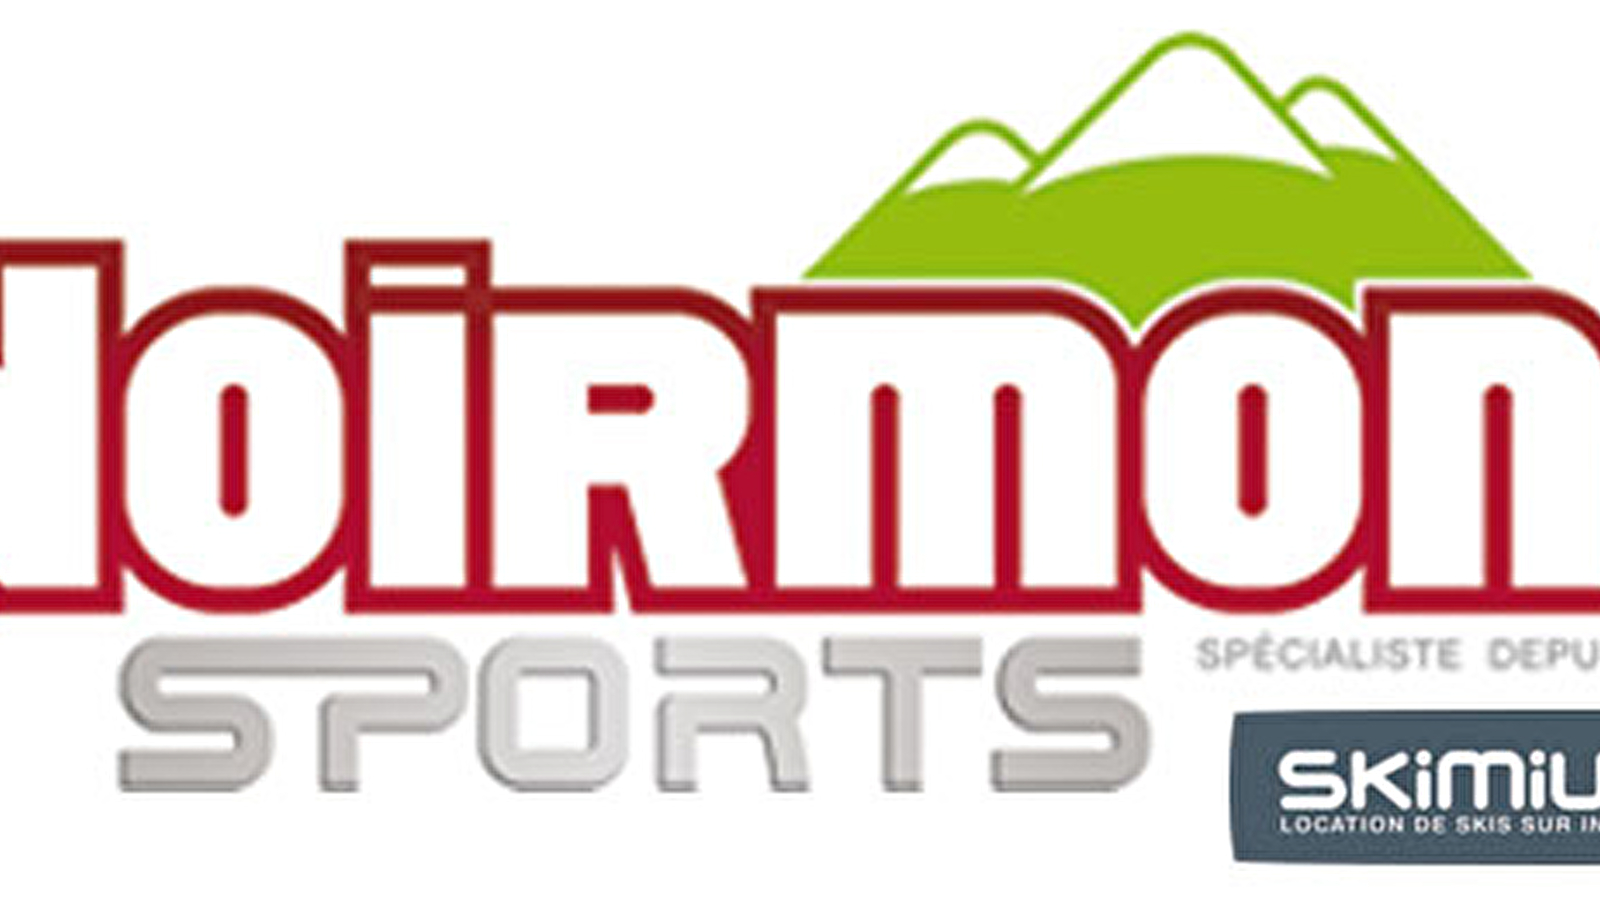 Noirmont Sports